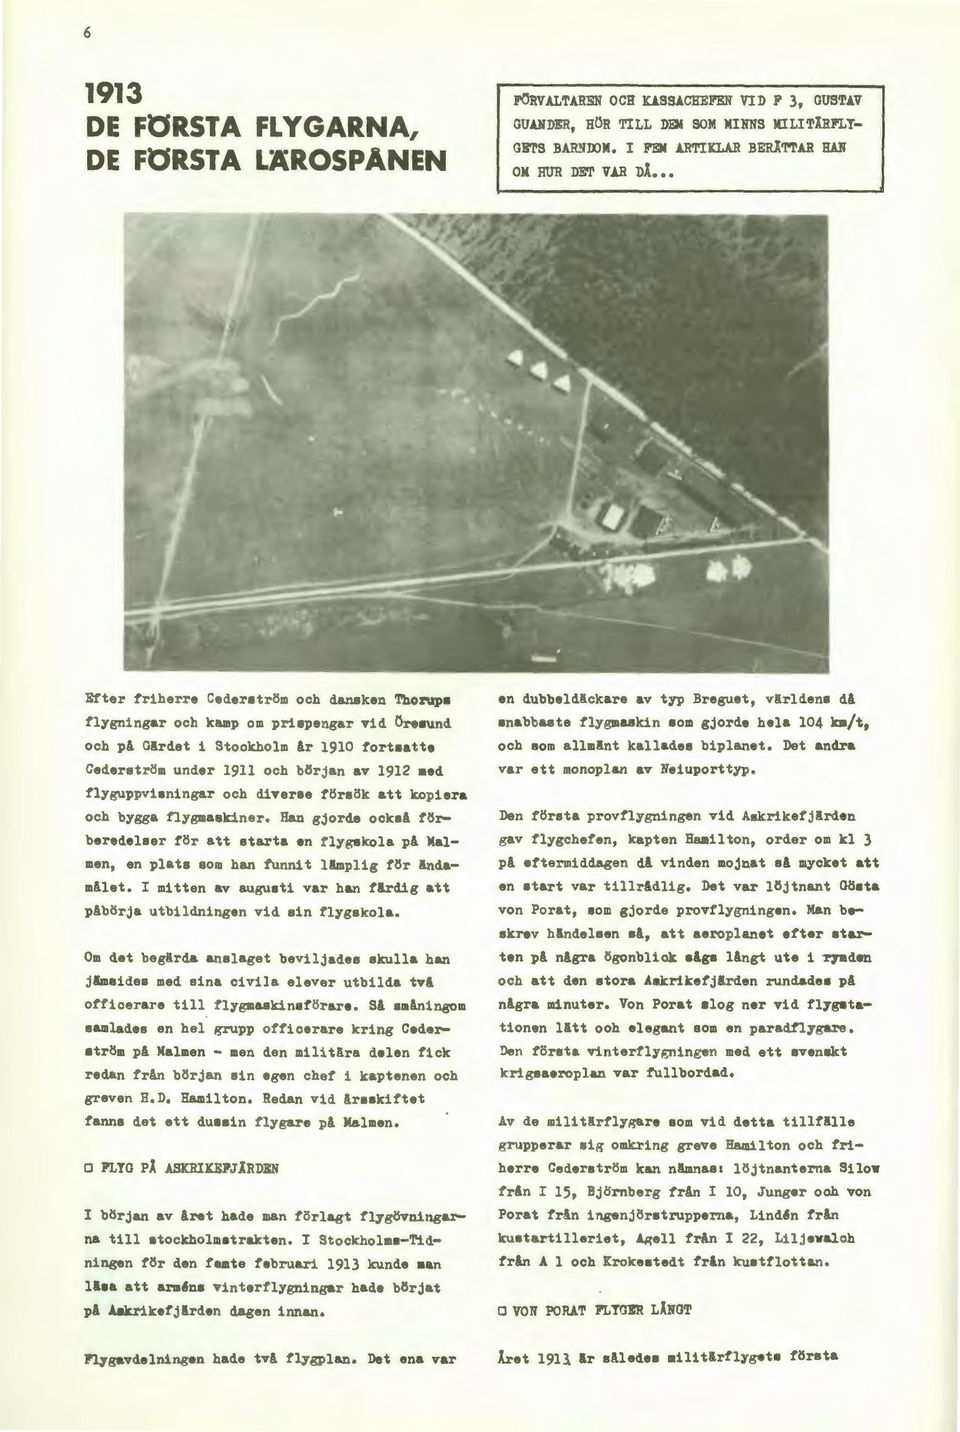 under 1911 och början av 1912 aed flyguppvi ningar och diverse försök att kopiera och bygga flygmaskiner.